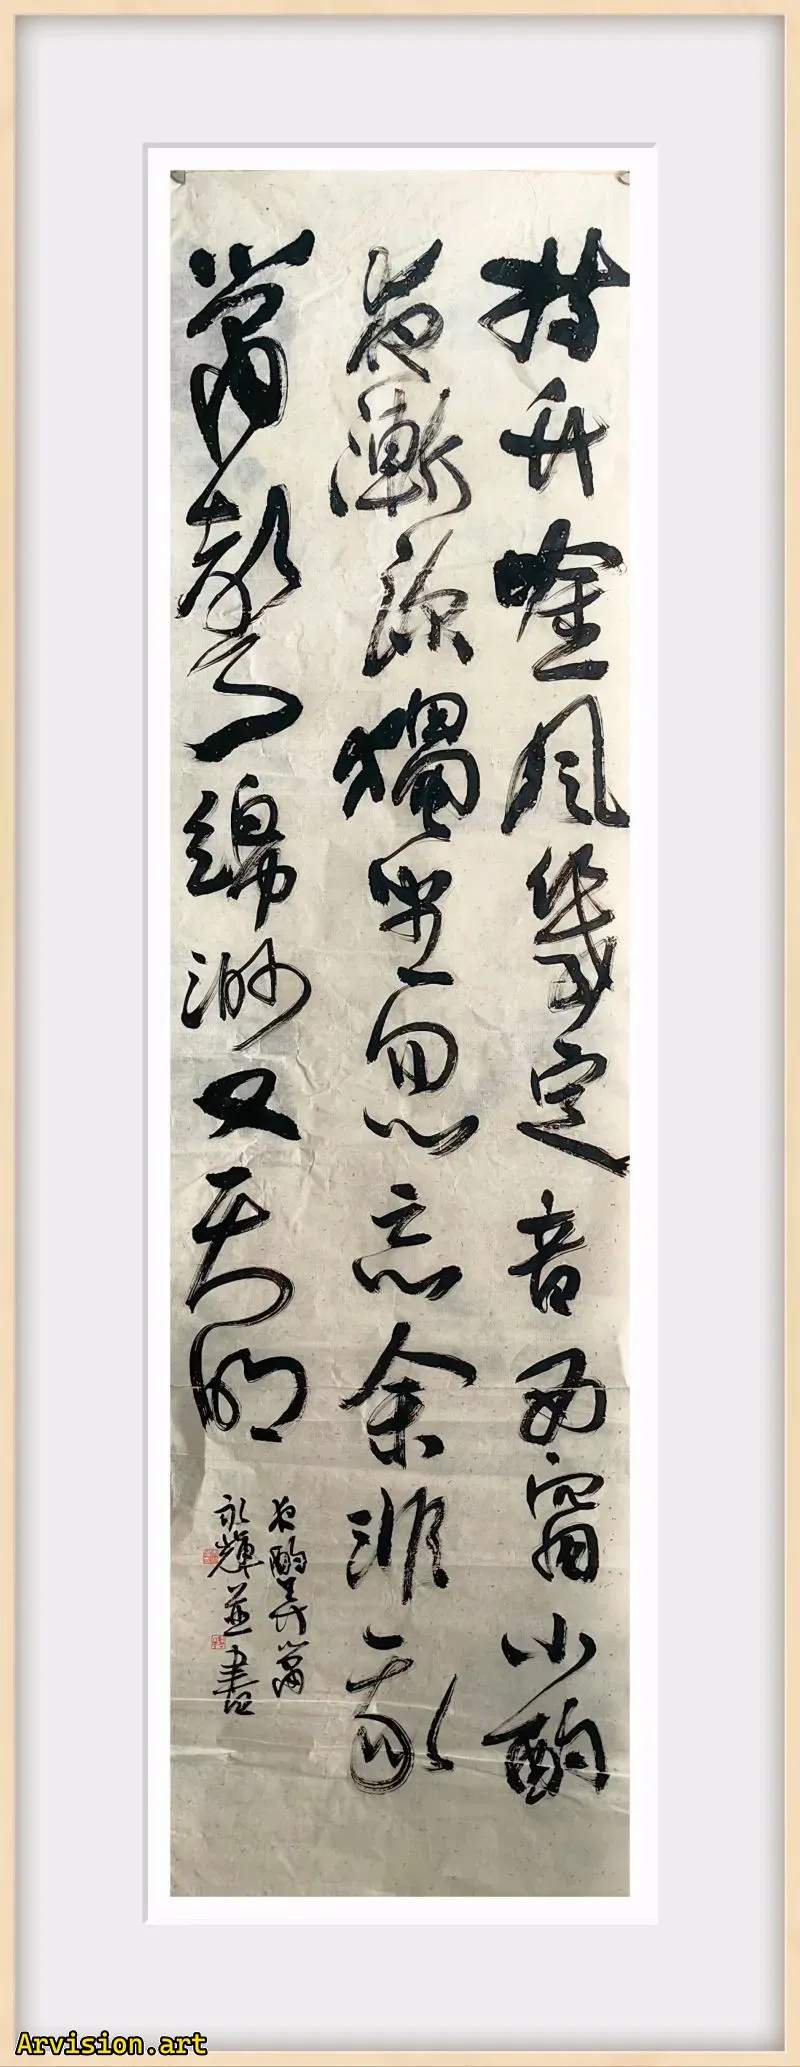 Las obras de caligrafía de Song Yonghui sostienen el viento de bambú y varios sonidos finales.